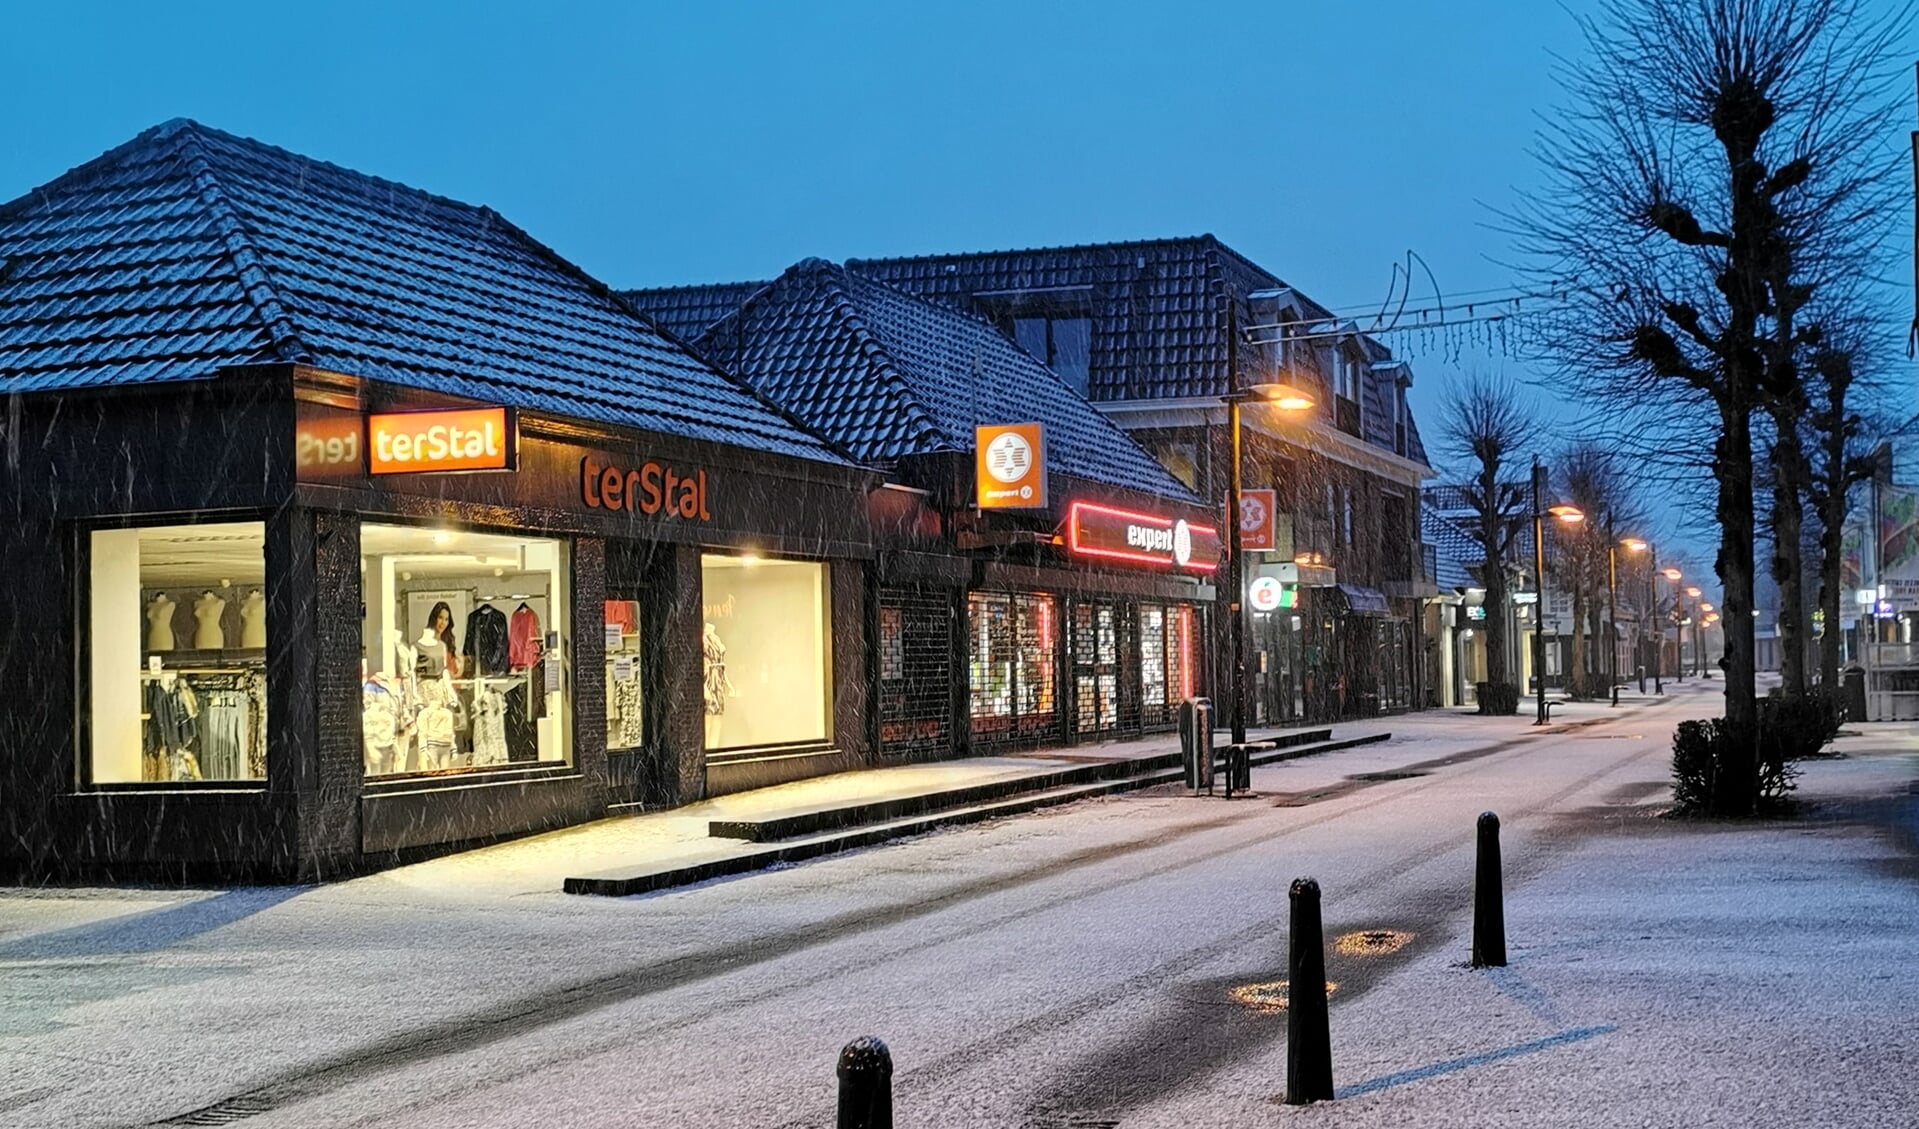 Vanmorgen begon de dag met natte sneeuw, in de vroege ochtend was het centrum van Burgum even een witte wereld. 